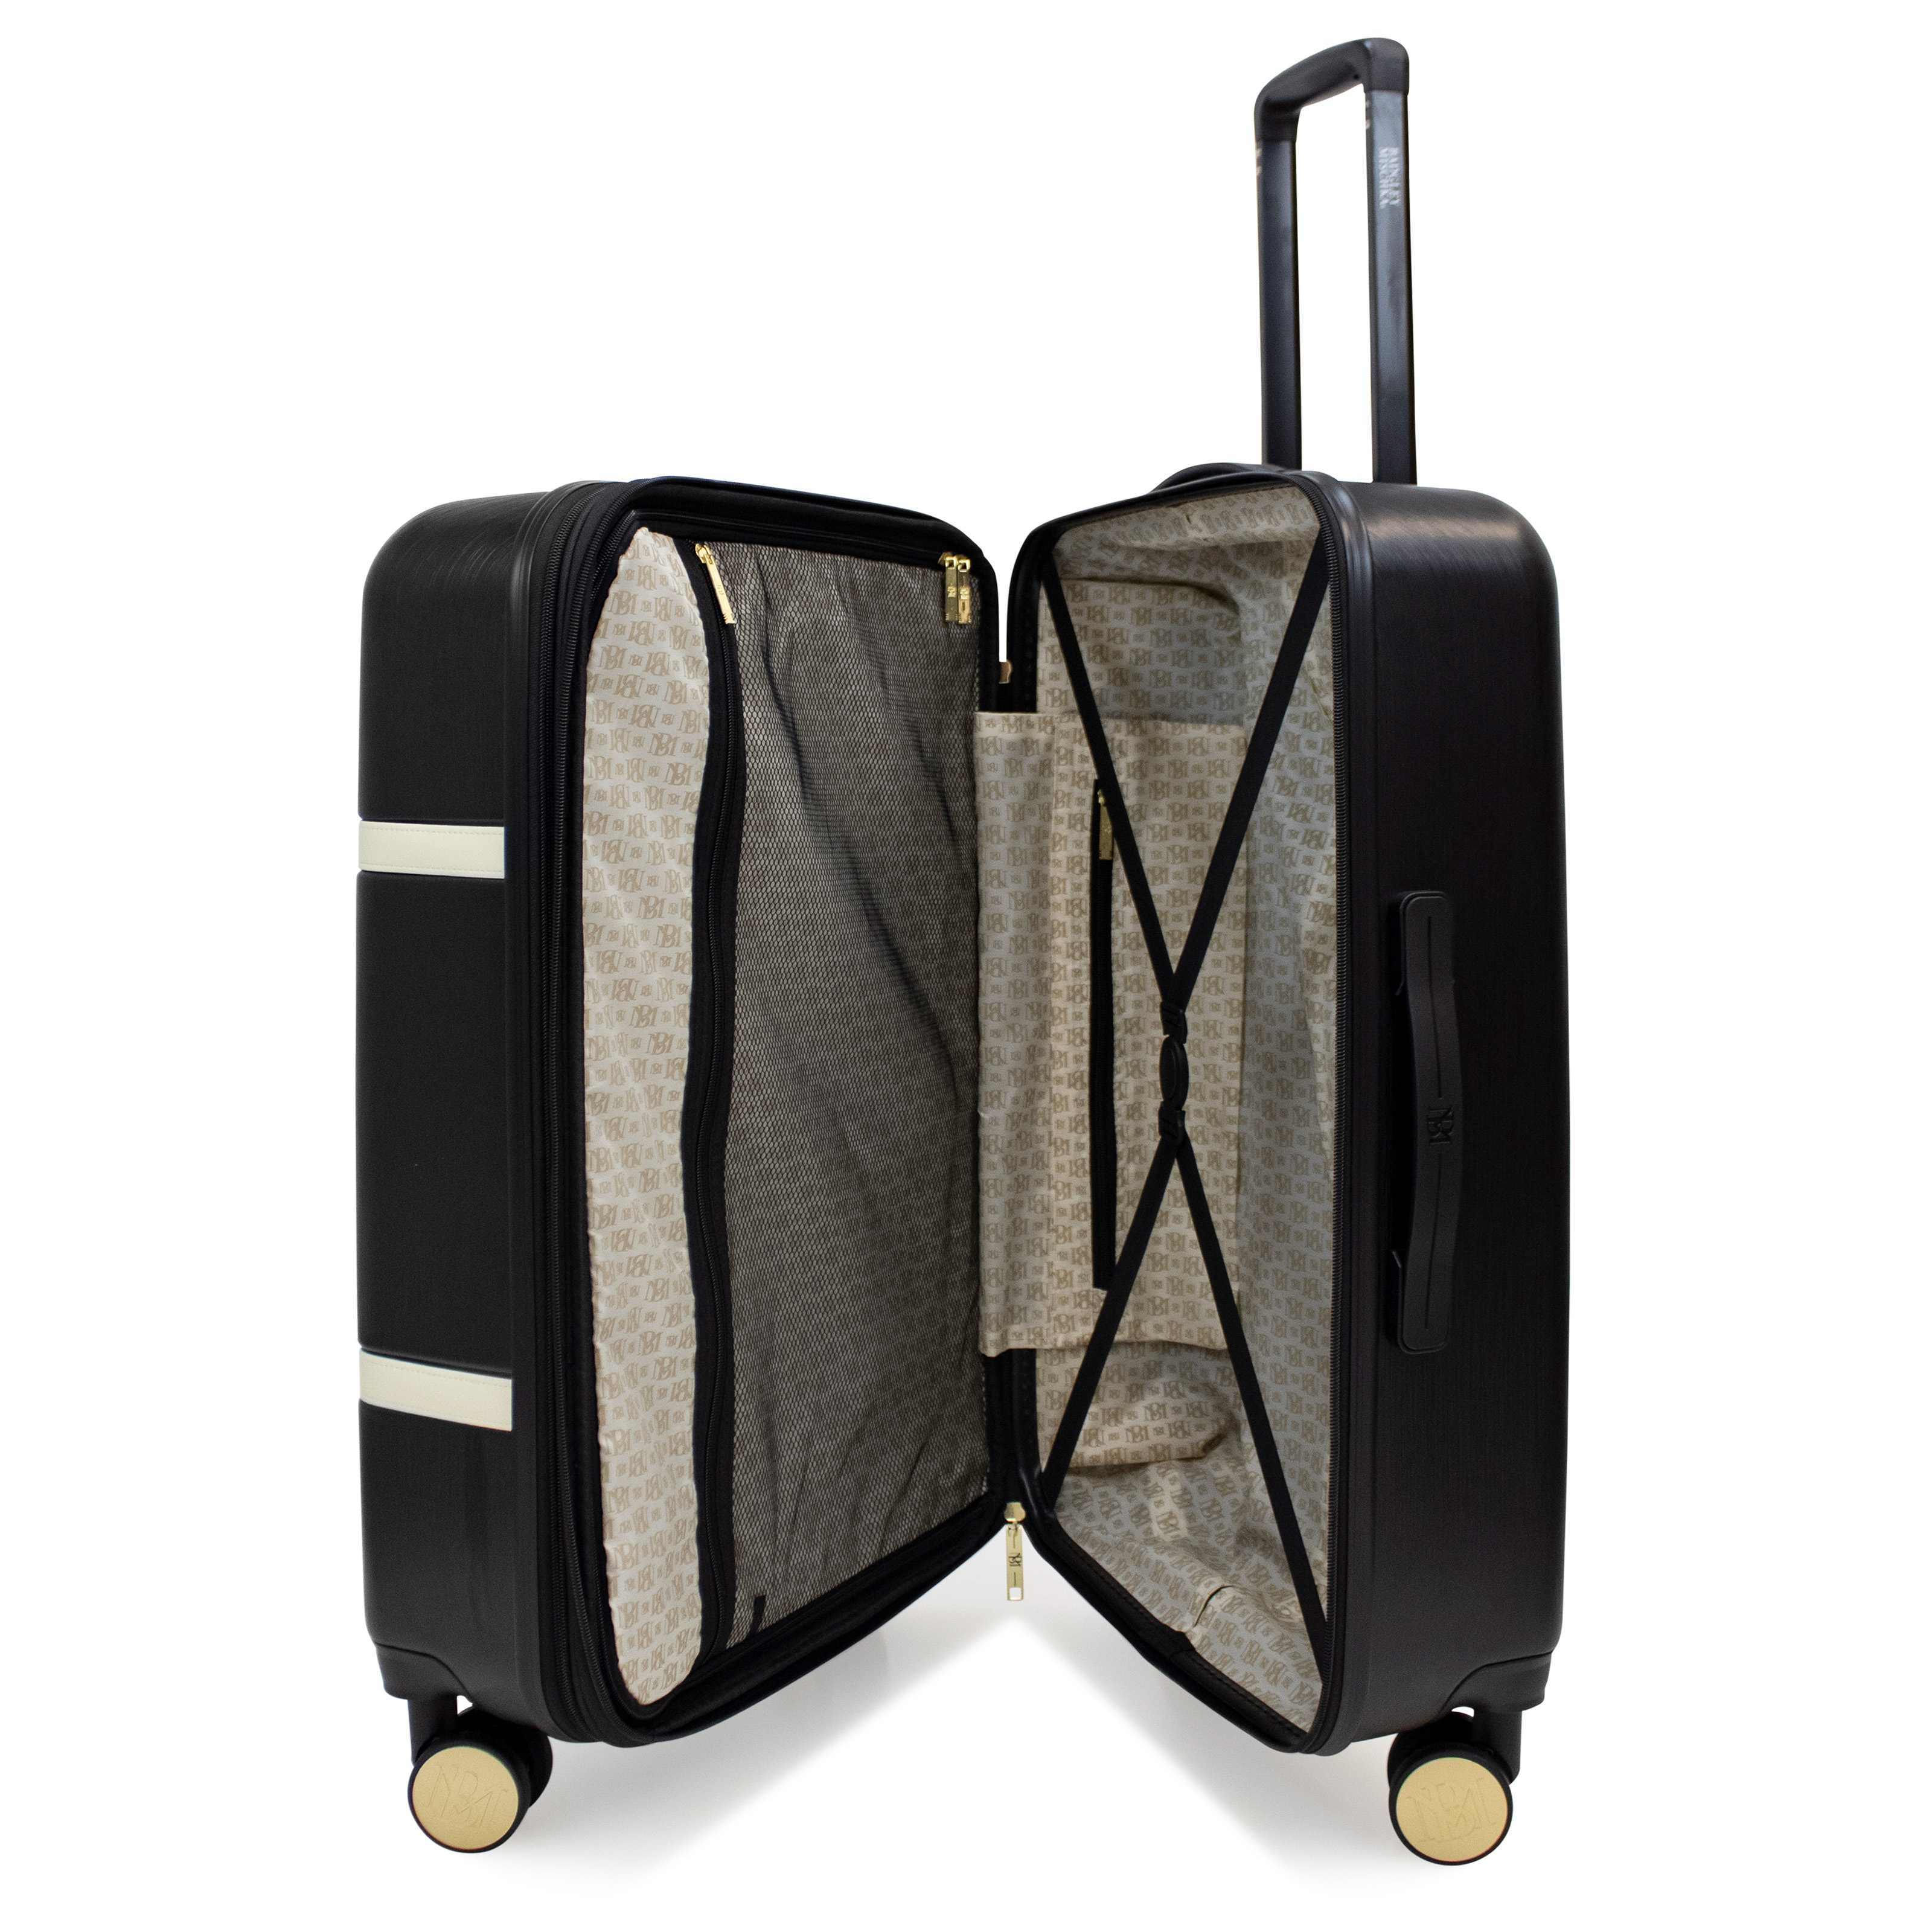 BADGLEY MISCHKA Grace 3 Piece Expandable Retro Luggage Set (Black) - image 2 of 3